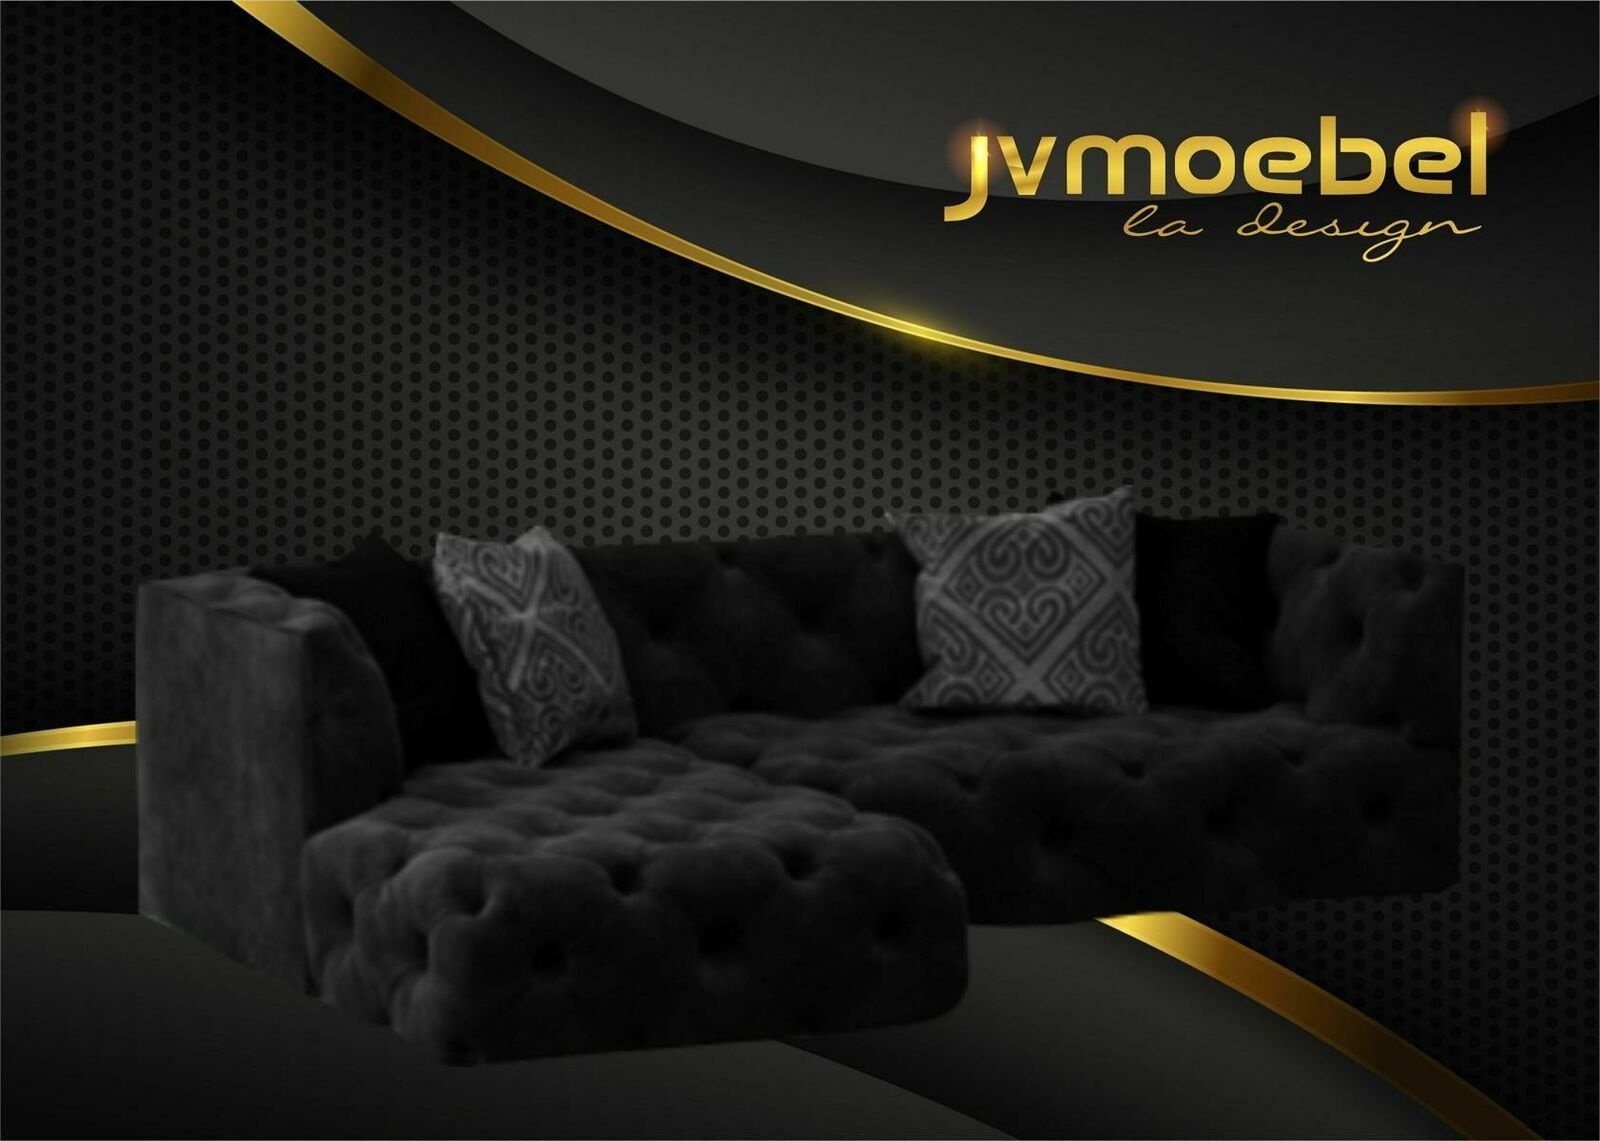 JVmoebel Ecksofa Braunes Chesterfield L-Form Couch Design Polstermöbel Neu, Made in Europe Schwarz | Ecksofas